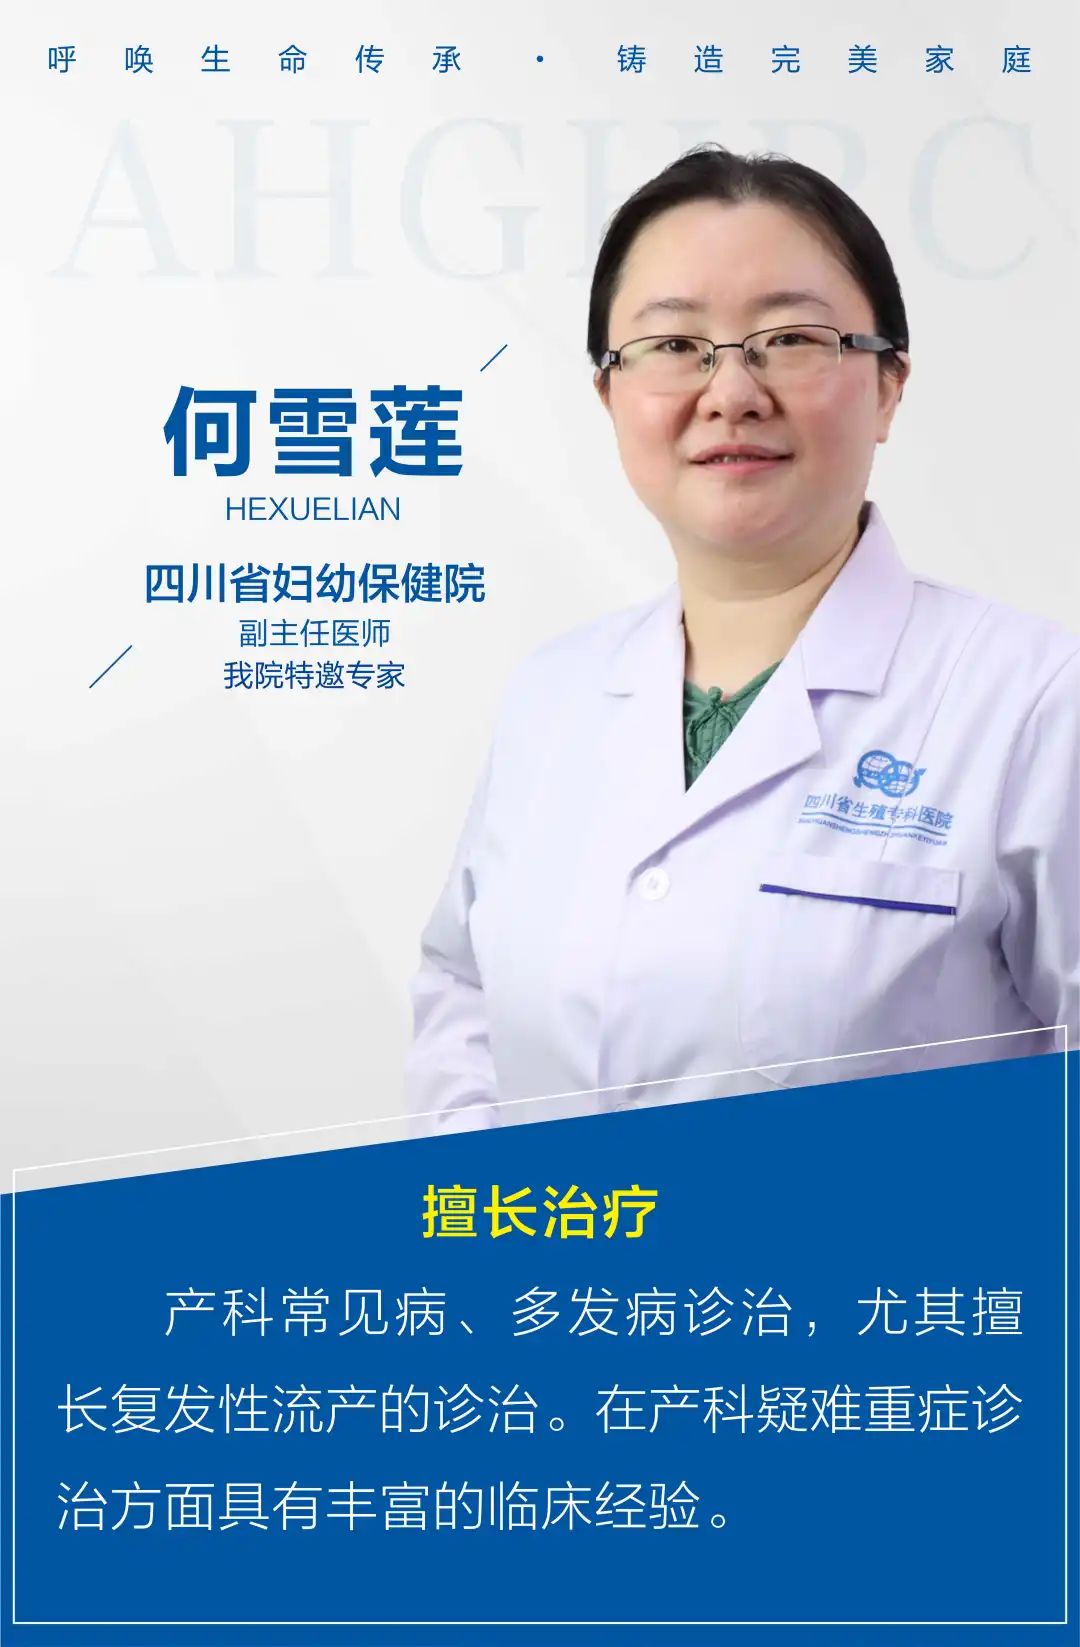 四川省妇幼保健院的产科专家何雪莲副主任